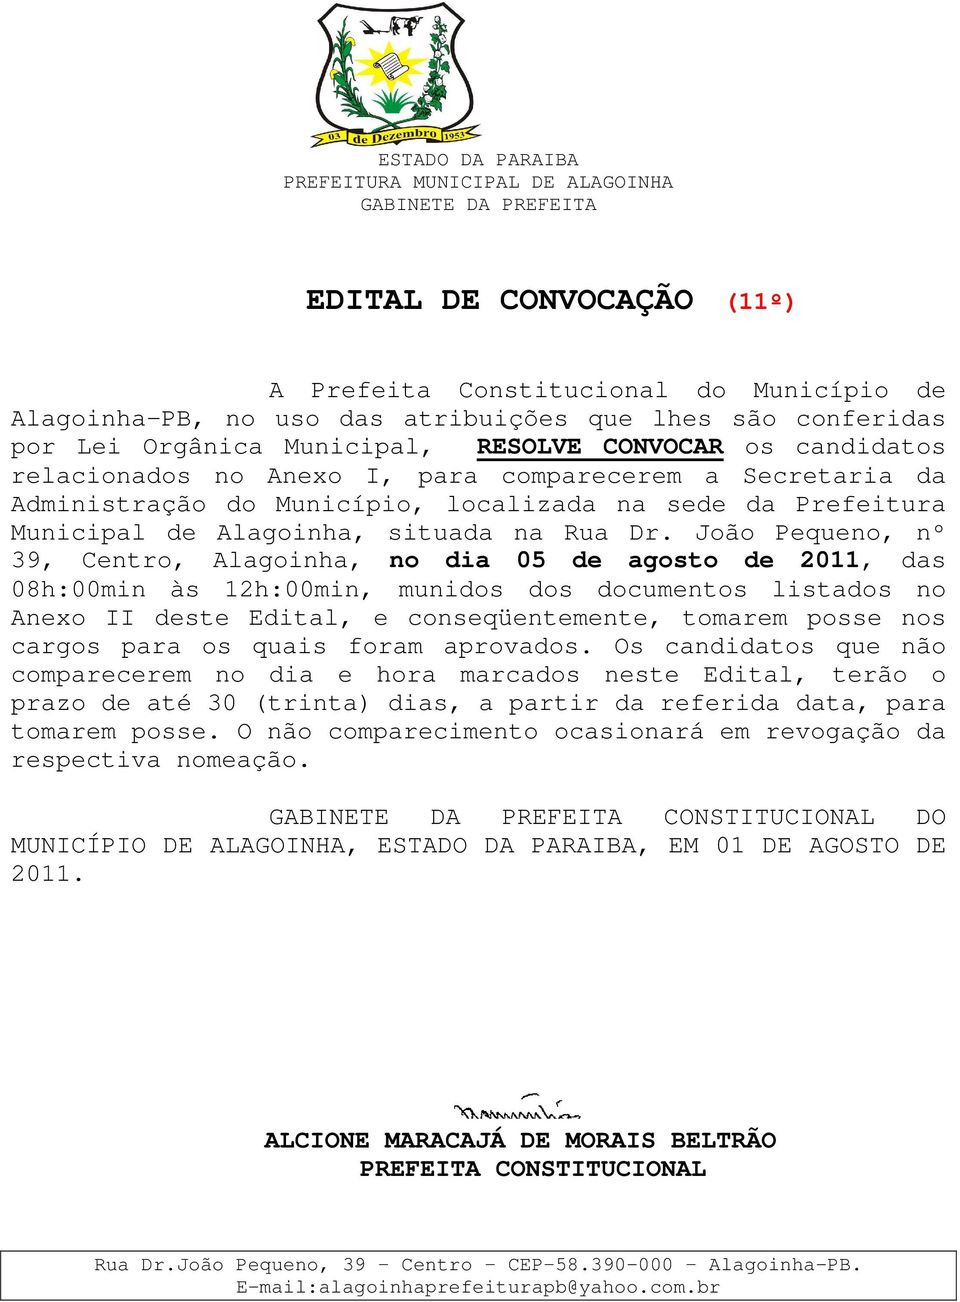 João Pequeno, nº 39, Centro, Alagoinha, no dia 05 de agosto de 2011, das 08h:00min às 12h:00min, munidos dos documentos listados no Anexo II deste Edital, e conseqüentemente, tomarem posse nos cargos